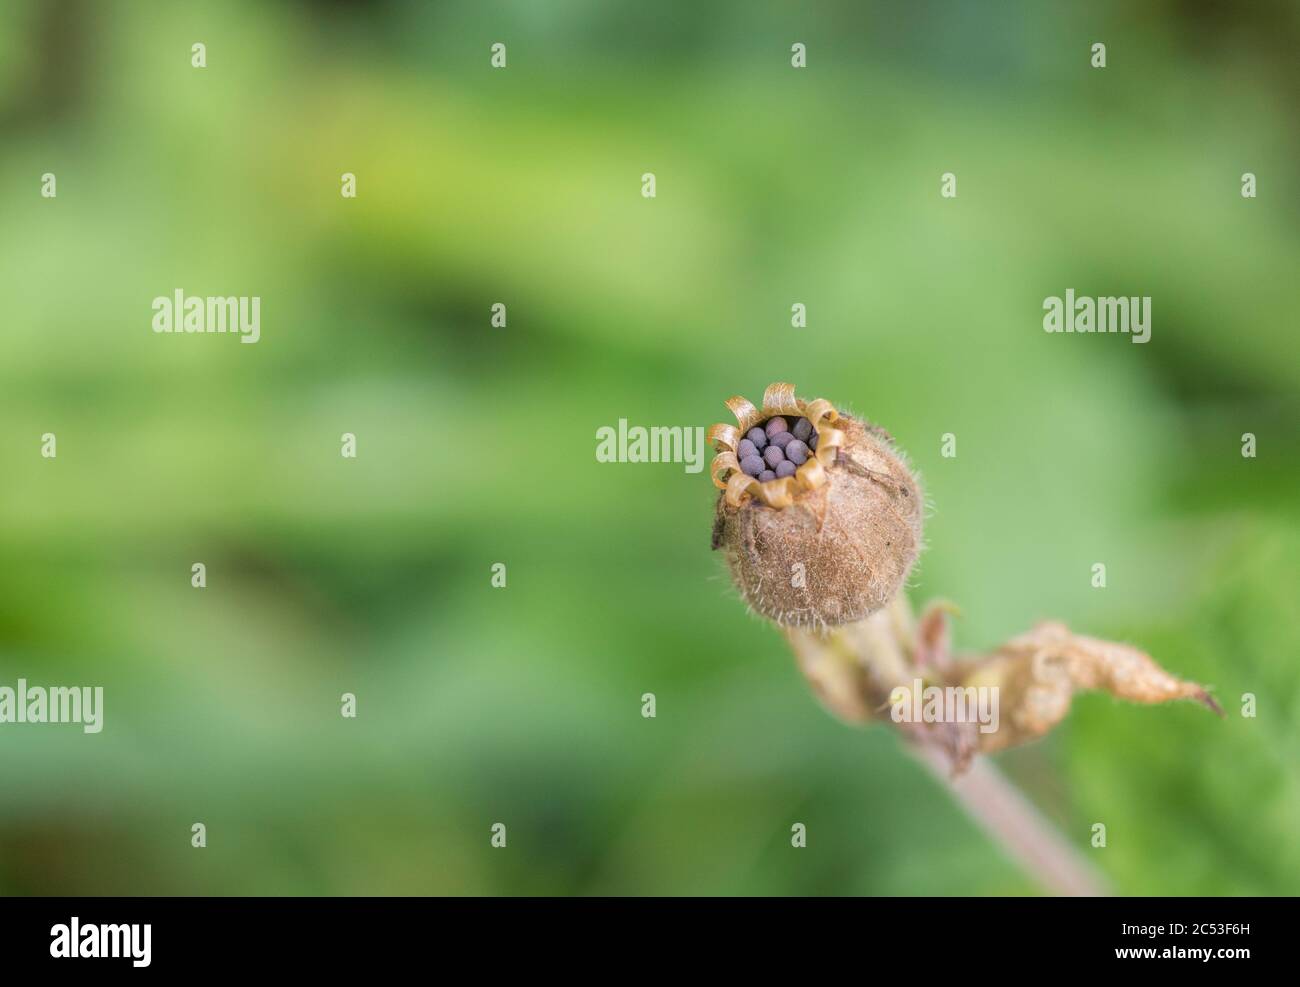 Makroaufnahme von schwärzlichen Samen / Saatkopf von Red Campion / Silene dioica in der offenen Samenschote. Stockfoto